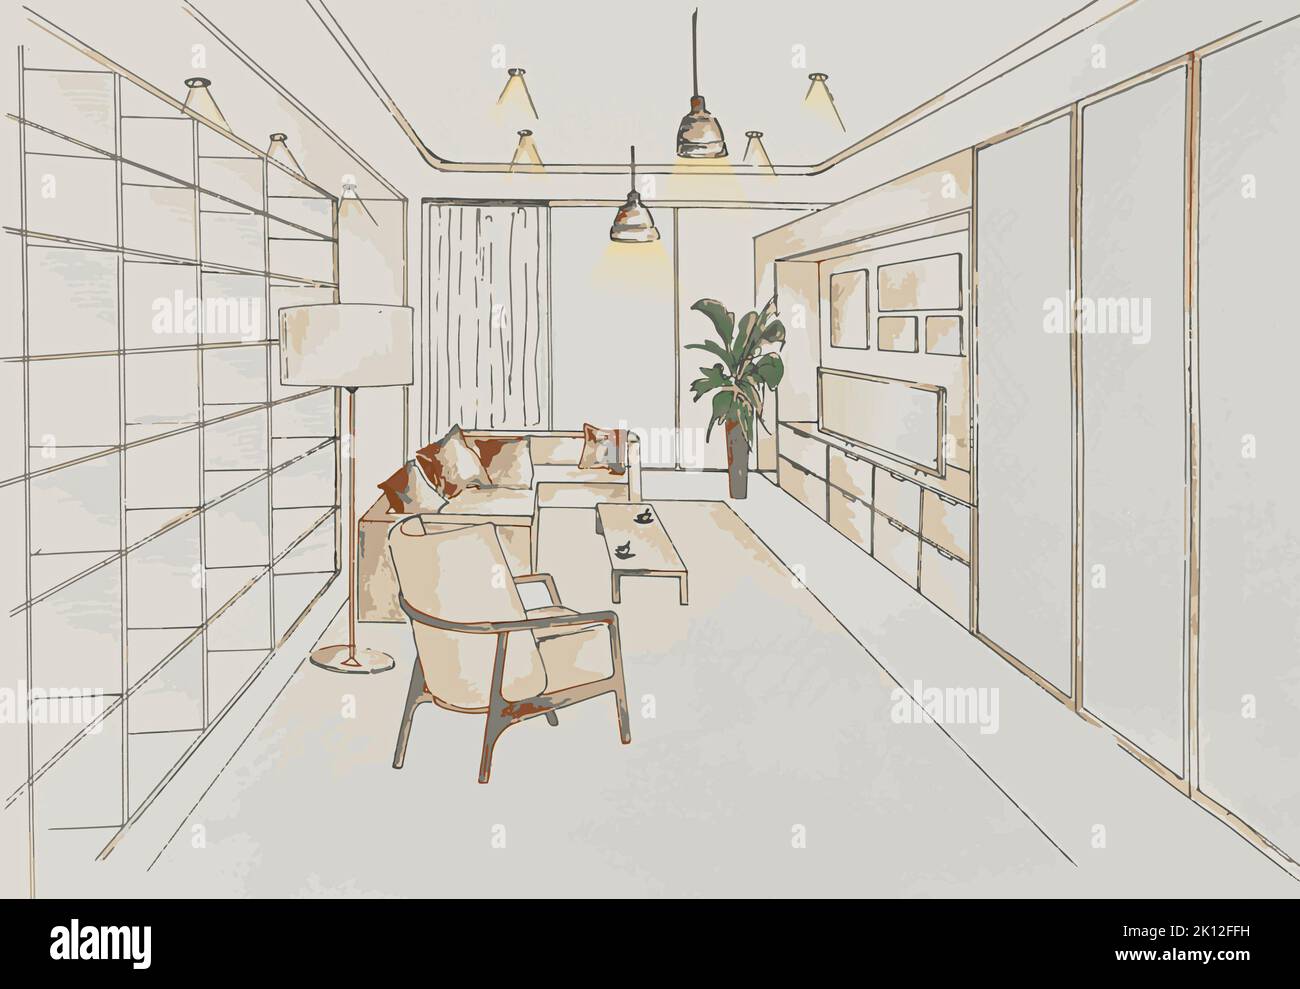 Entwurf eines modernen Wohnzimmers in perspektivischer Innenansicht. Zeichnungen und Pläne für die Hausdekoration Stockfoto